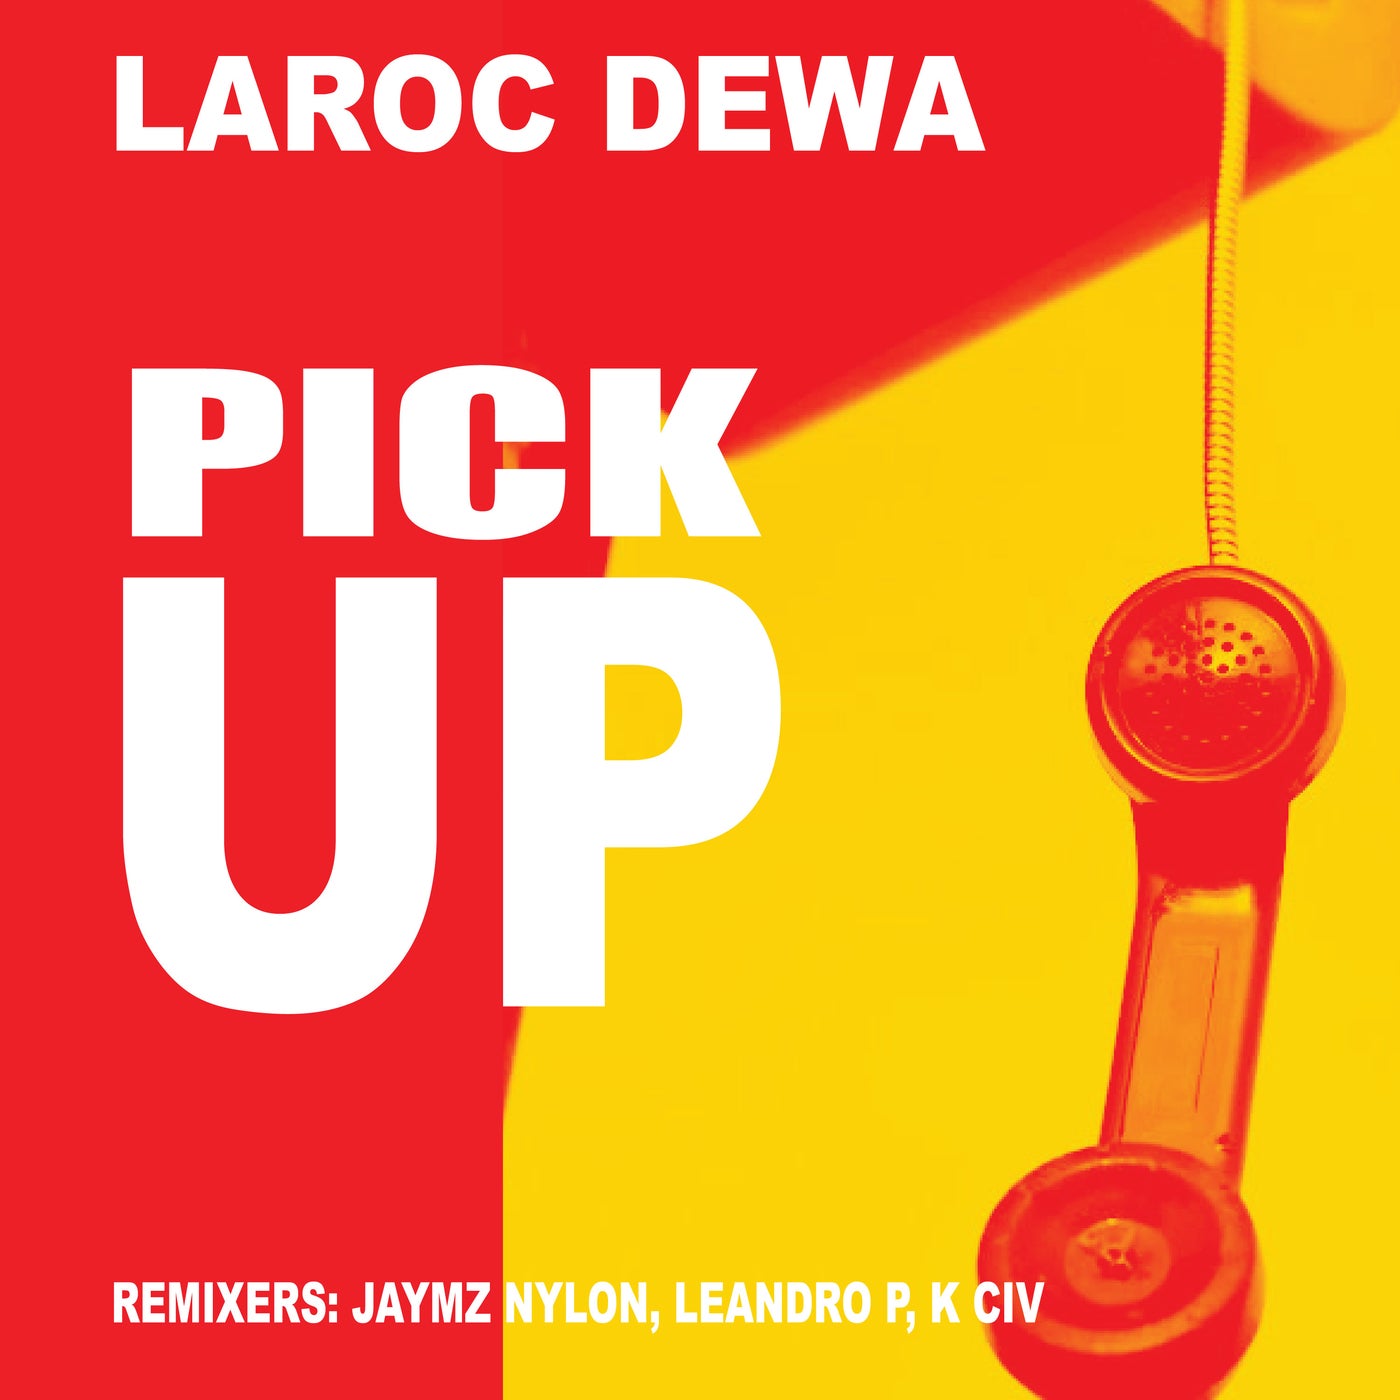 LaRoc Dewa - Pick Up [NT103]